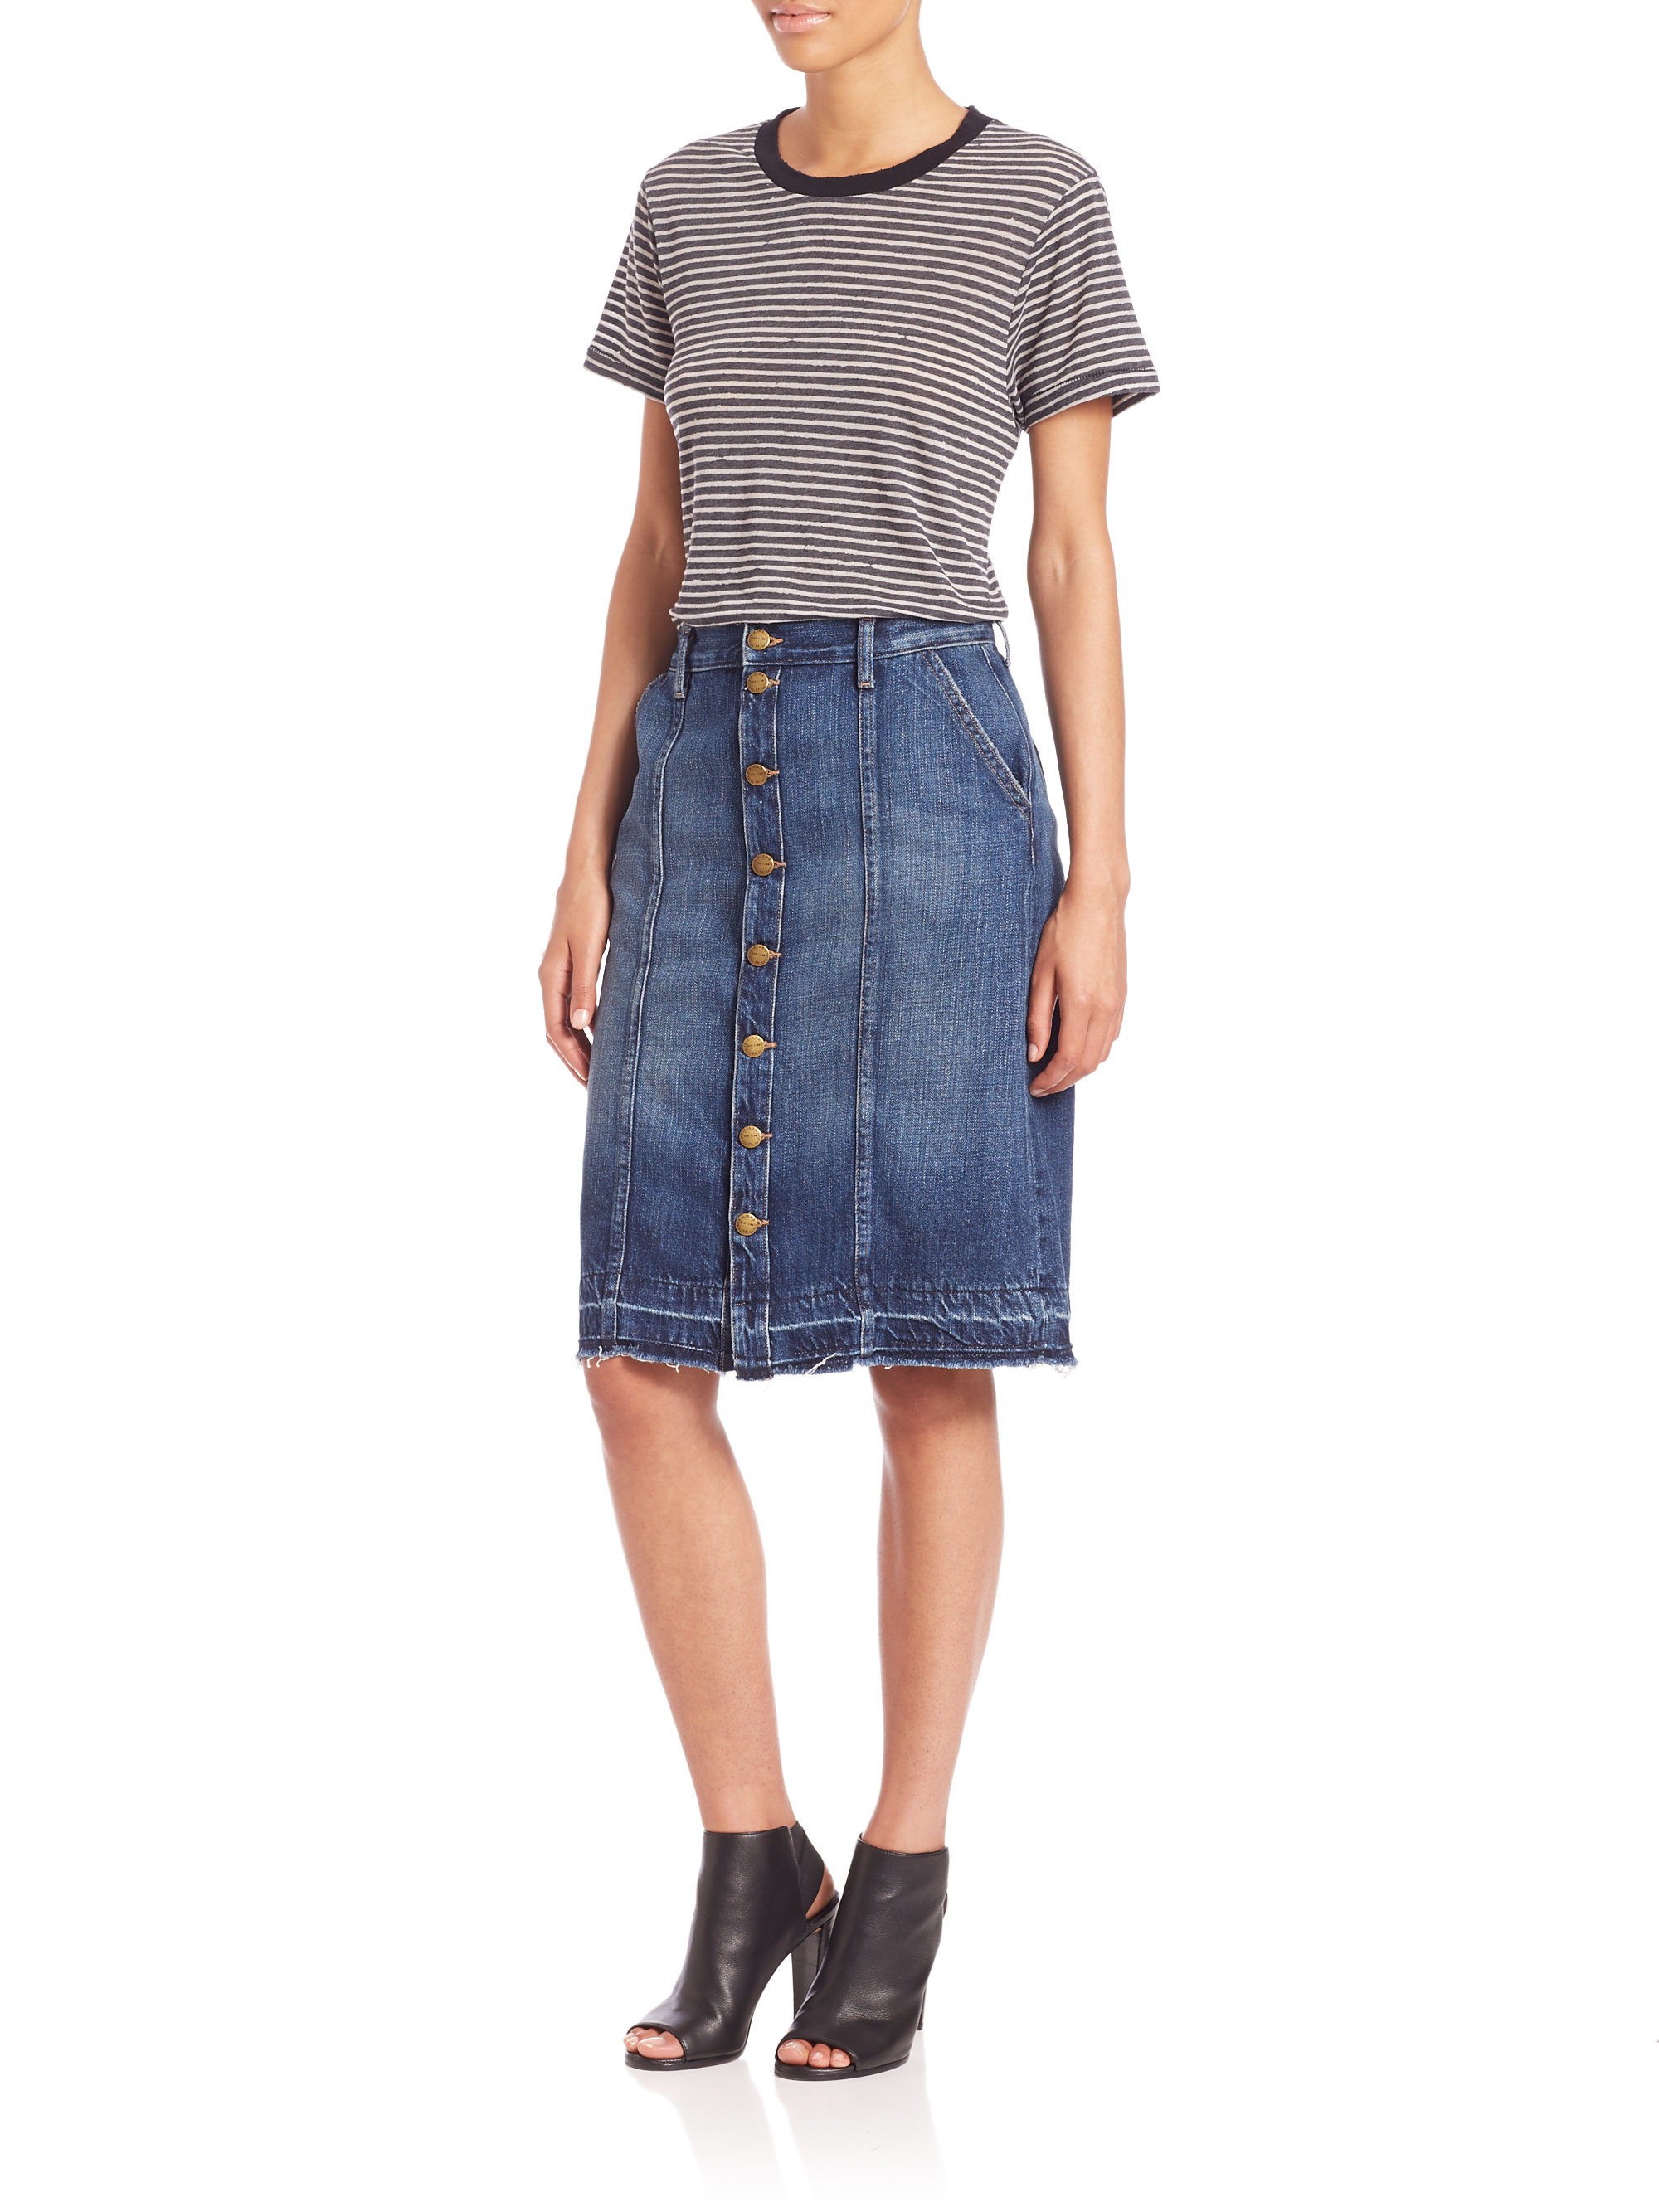 Current/Elliott Sally Button-front Denim Skirt in Blue - Lyst